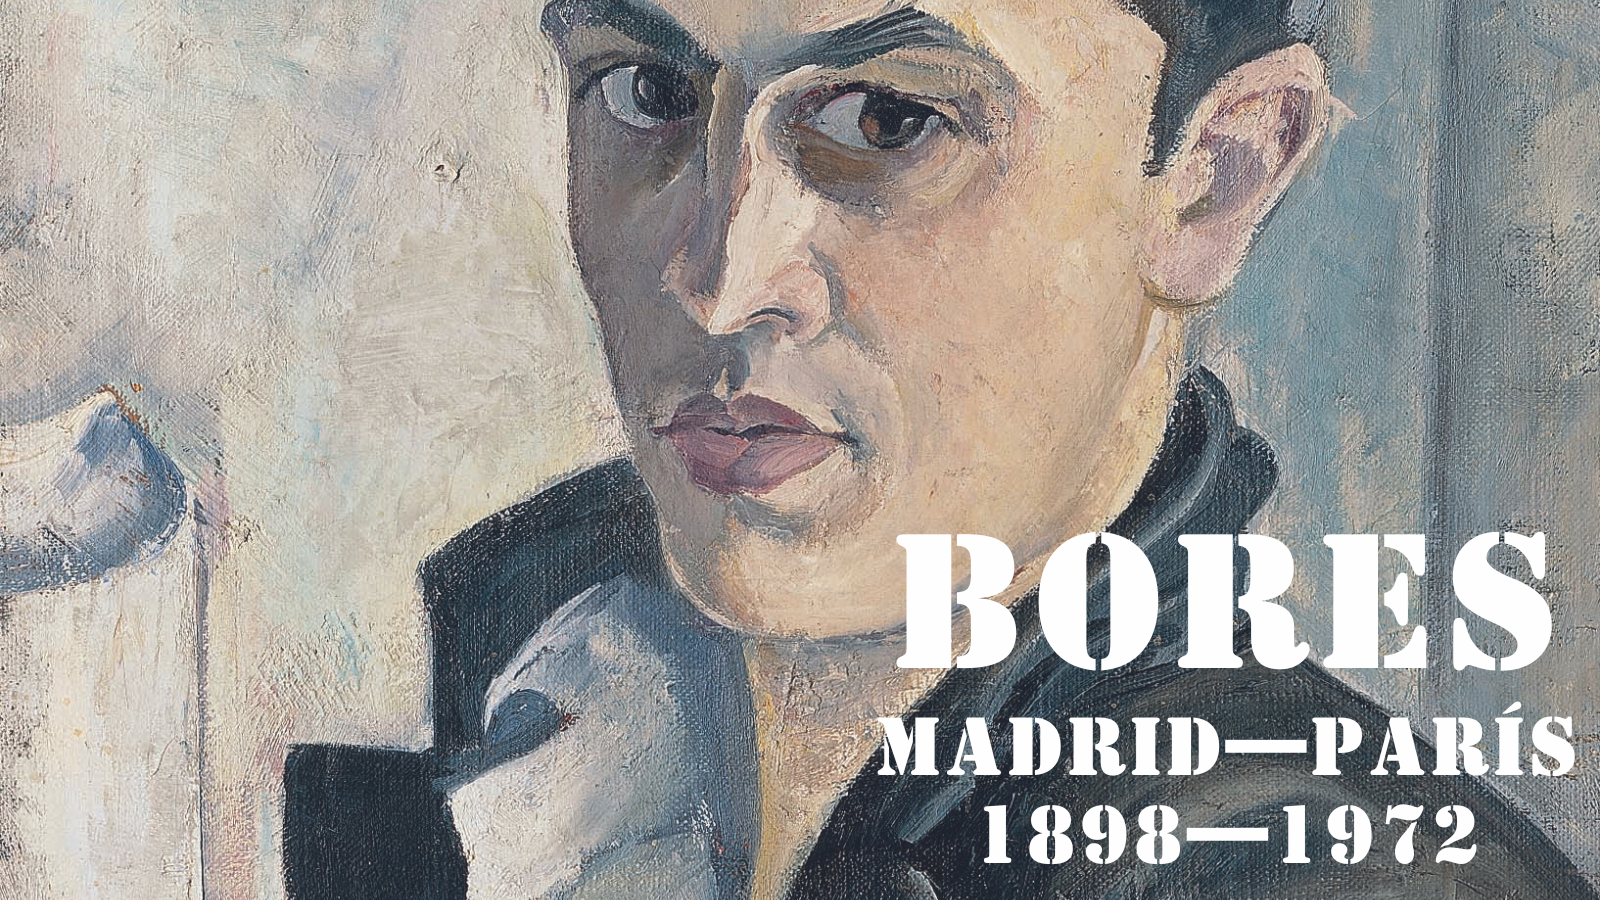 Francisco Bores (Madrid, 1898 - París, 1972)